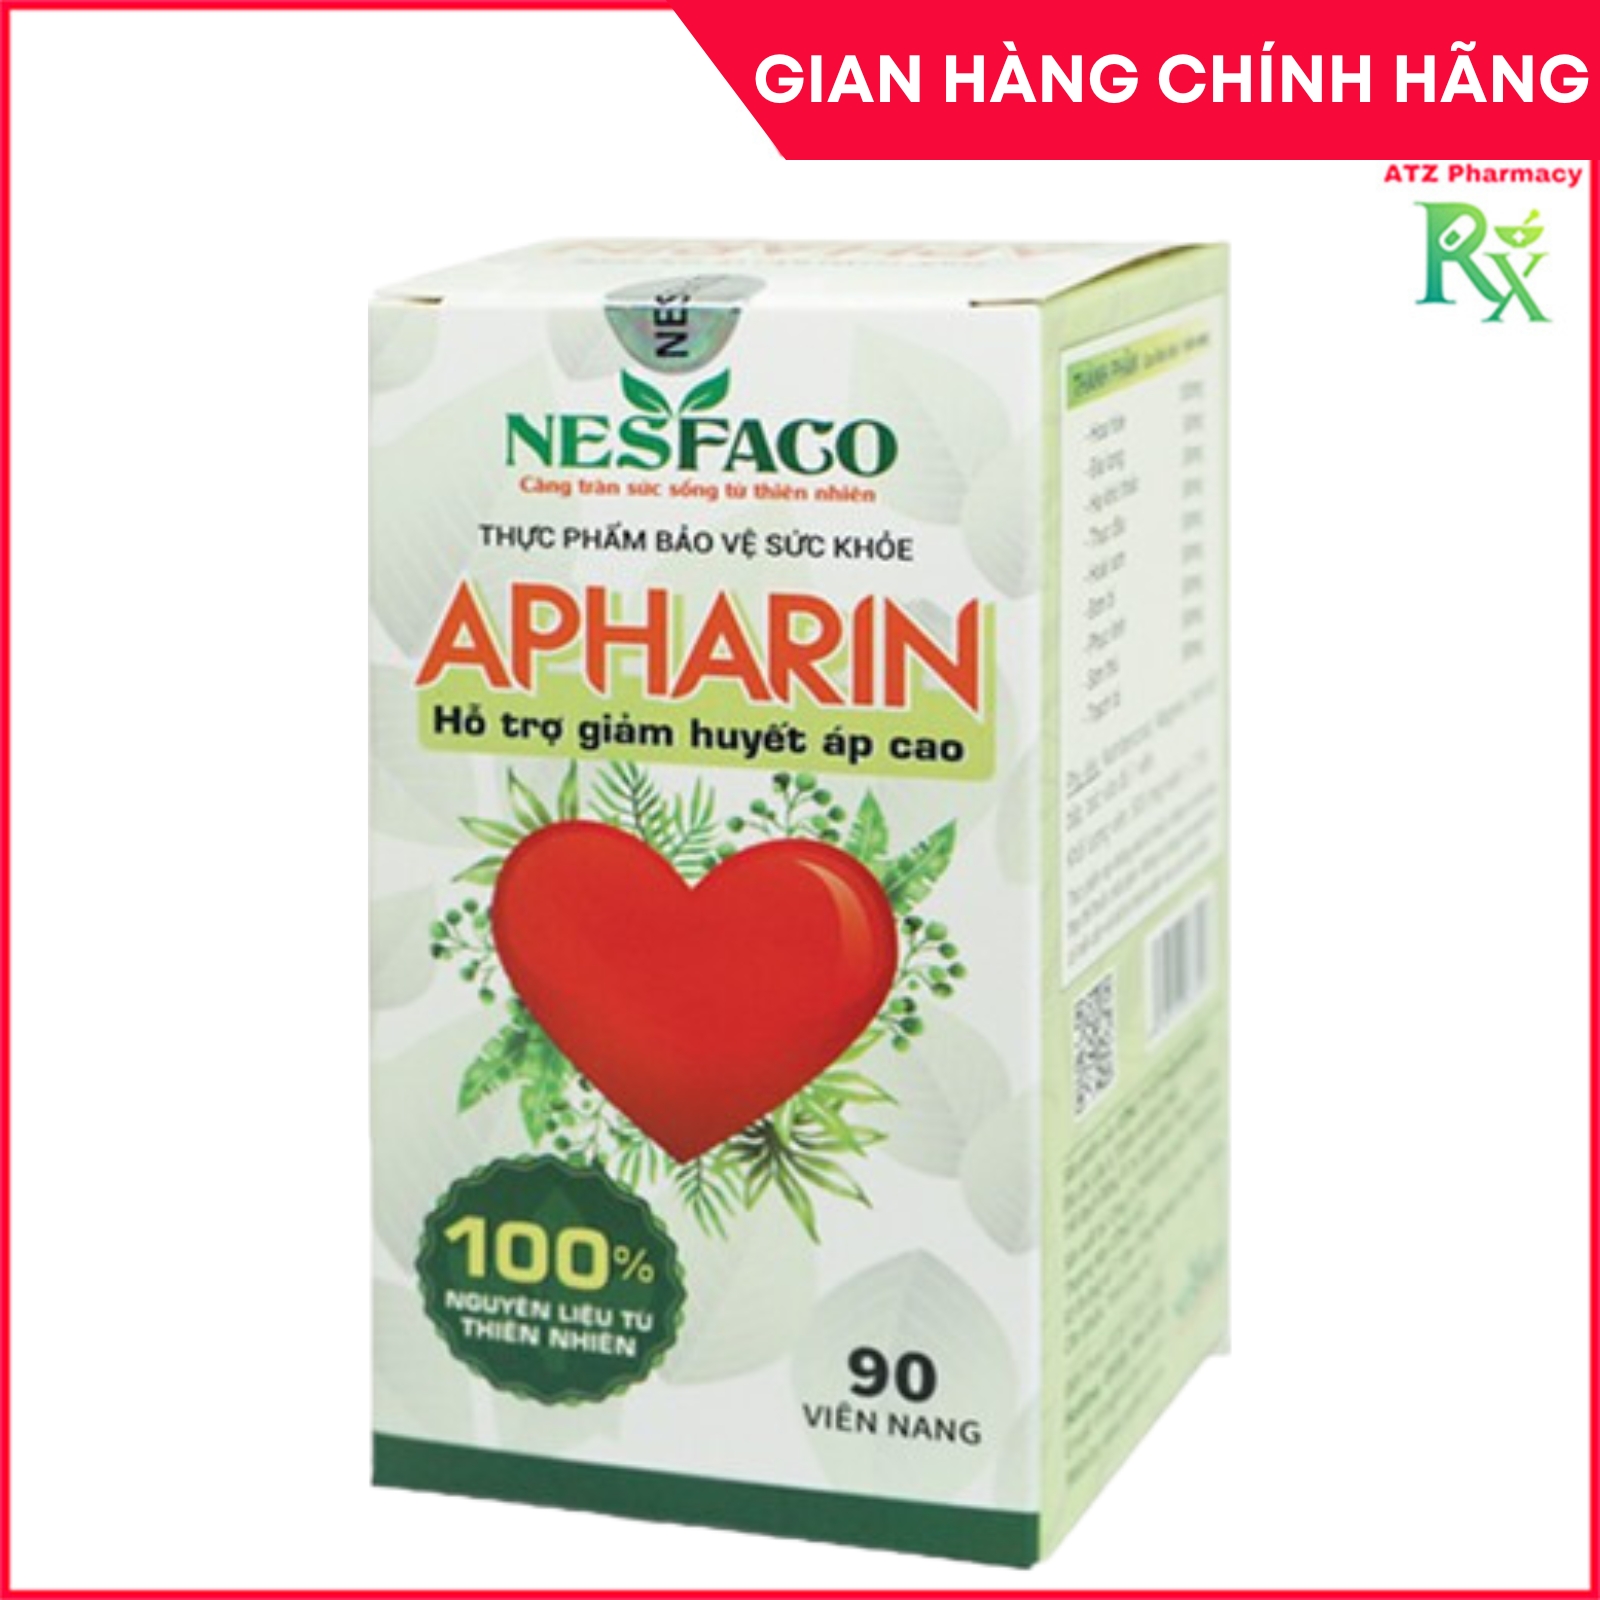 Apharin dành cho người cao huyết áp - 90 viên - ATZ Pharmacy